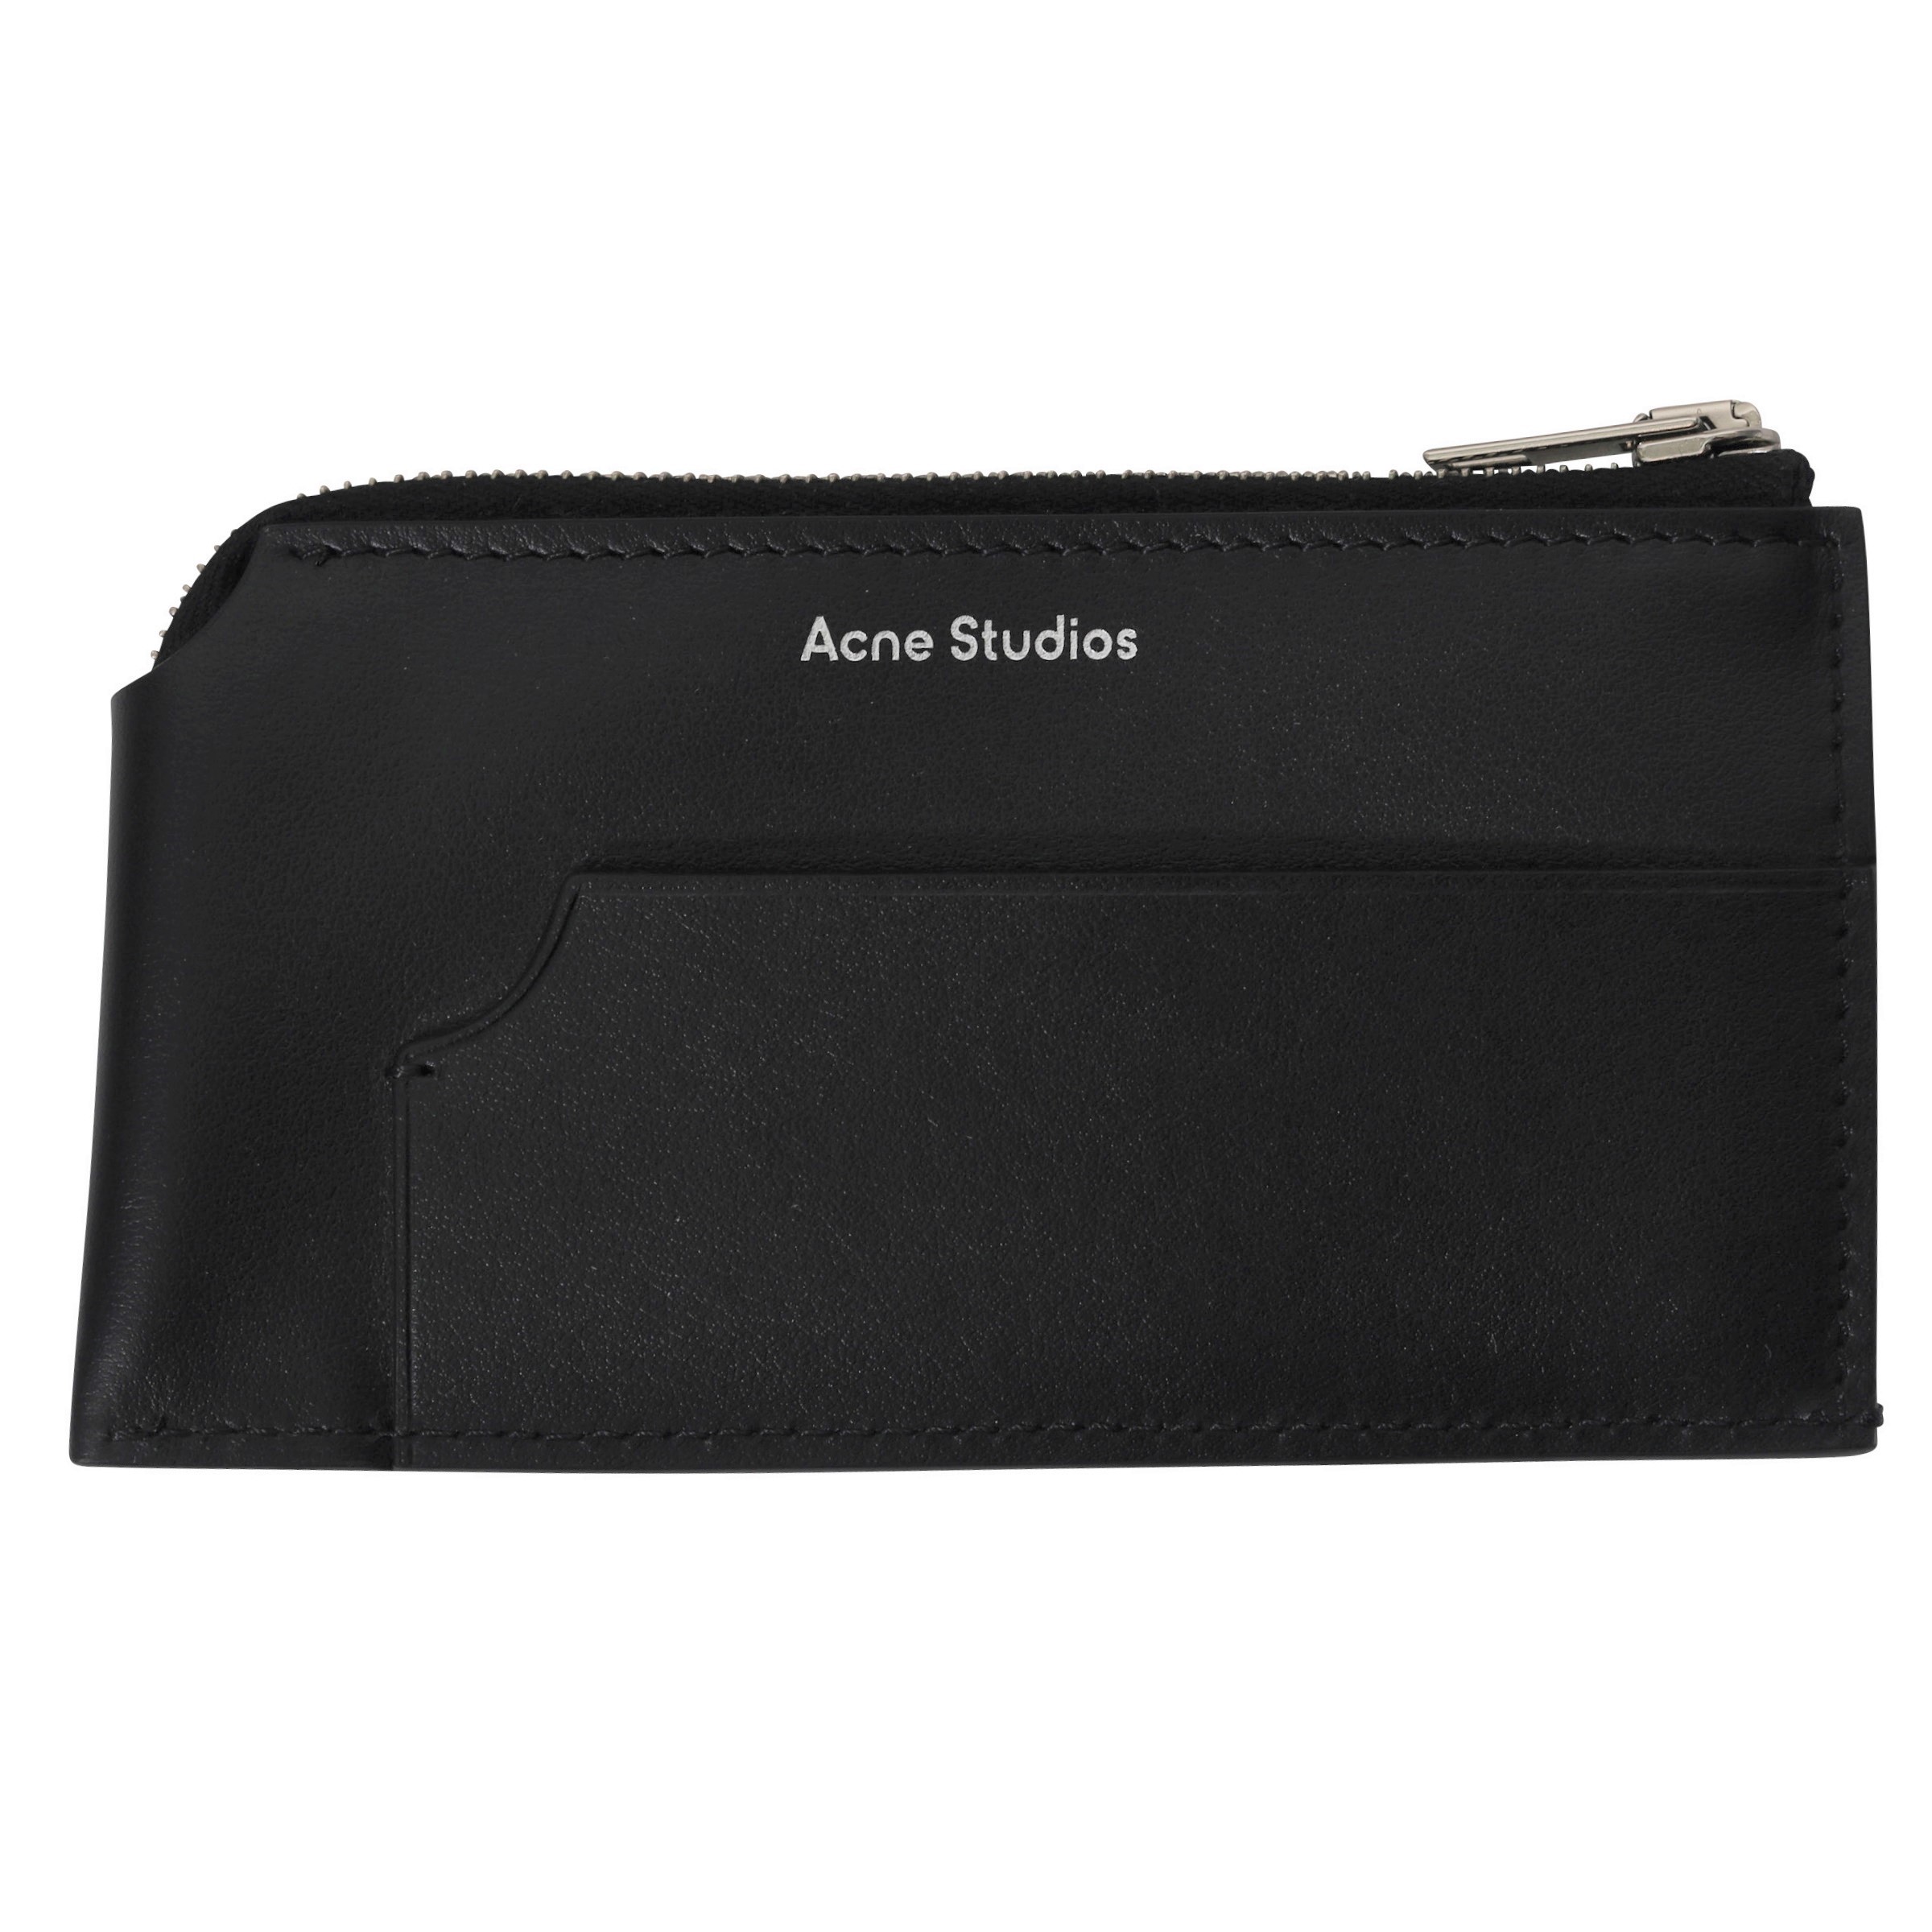 Acne Studios Wallet Black